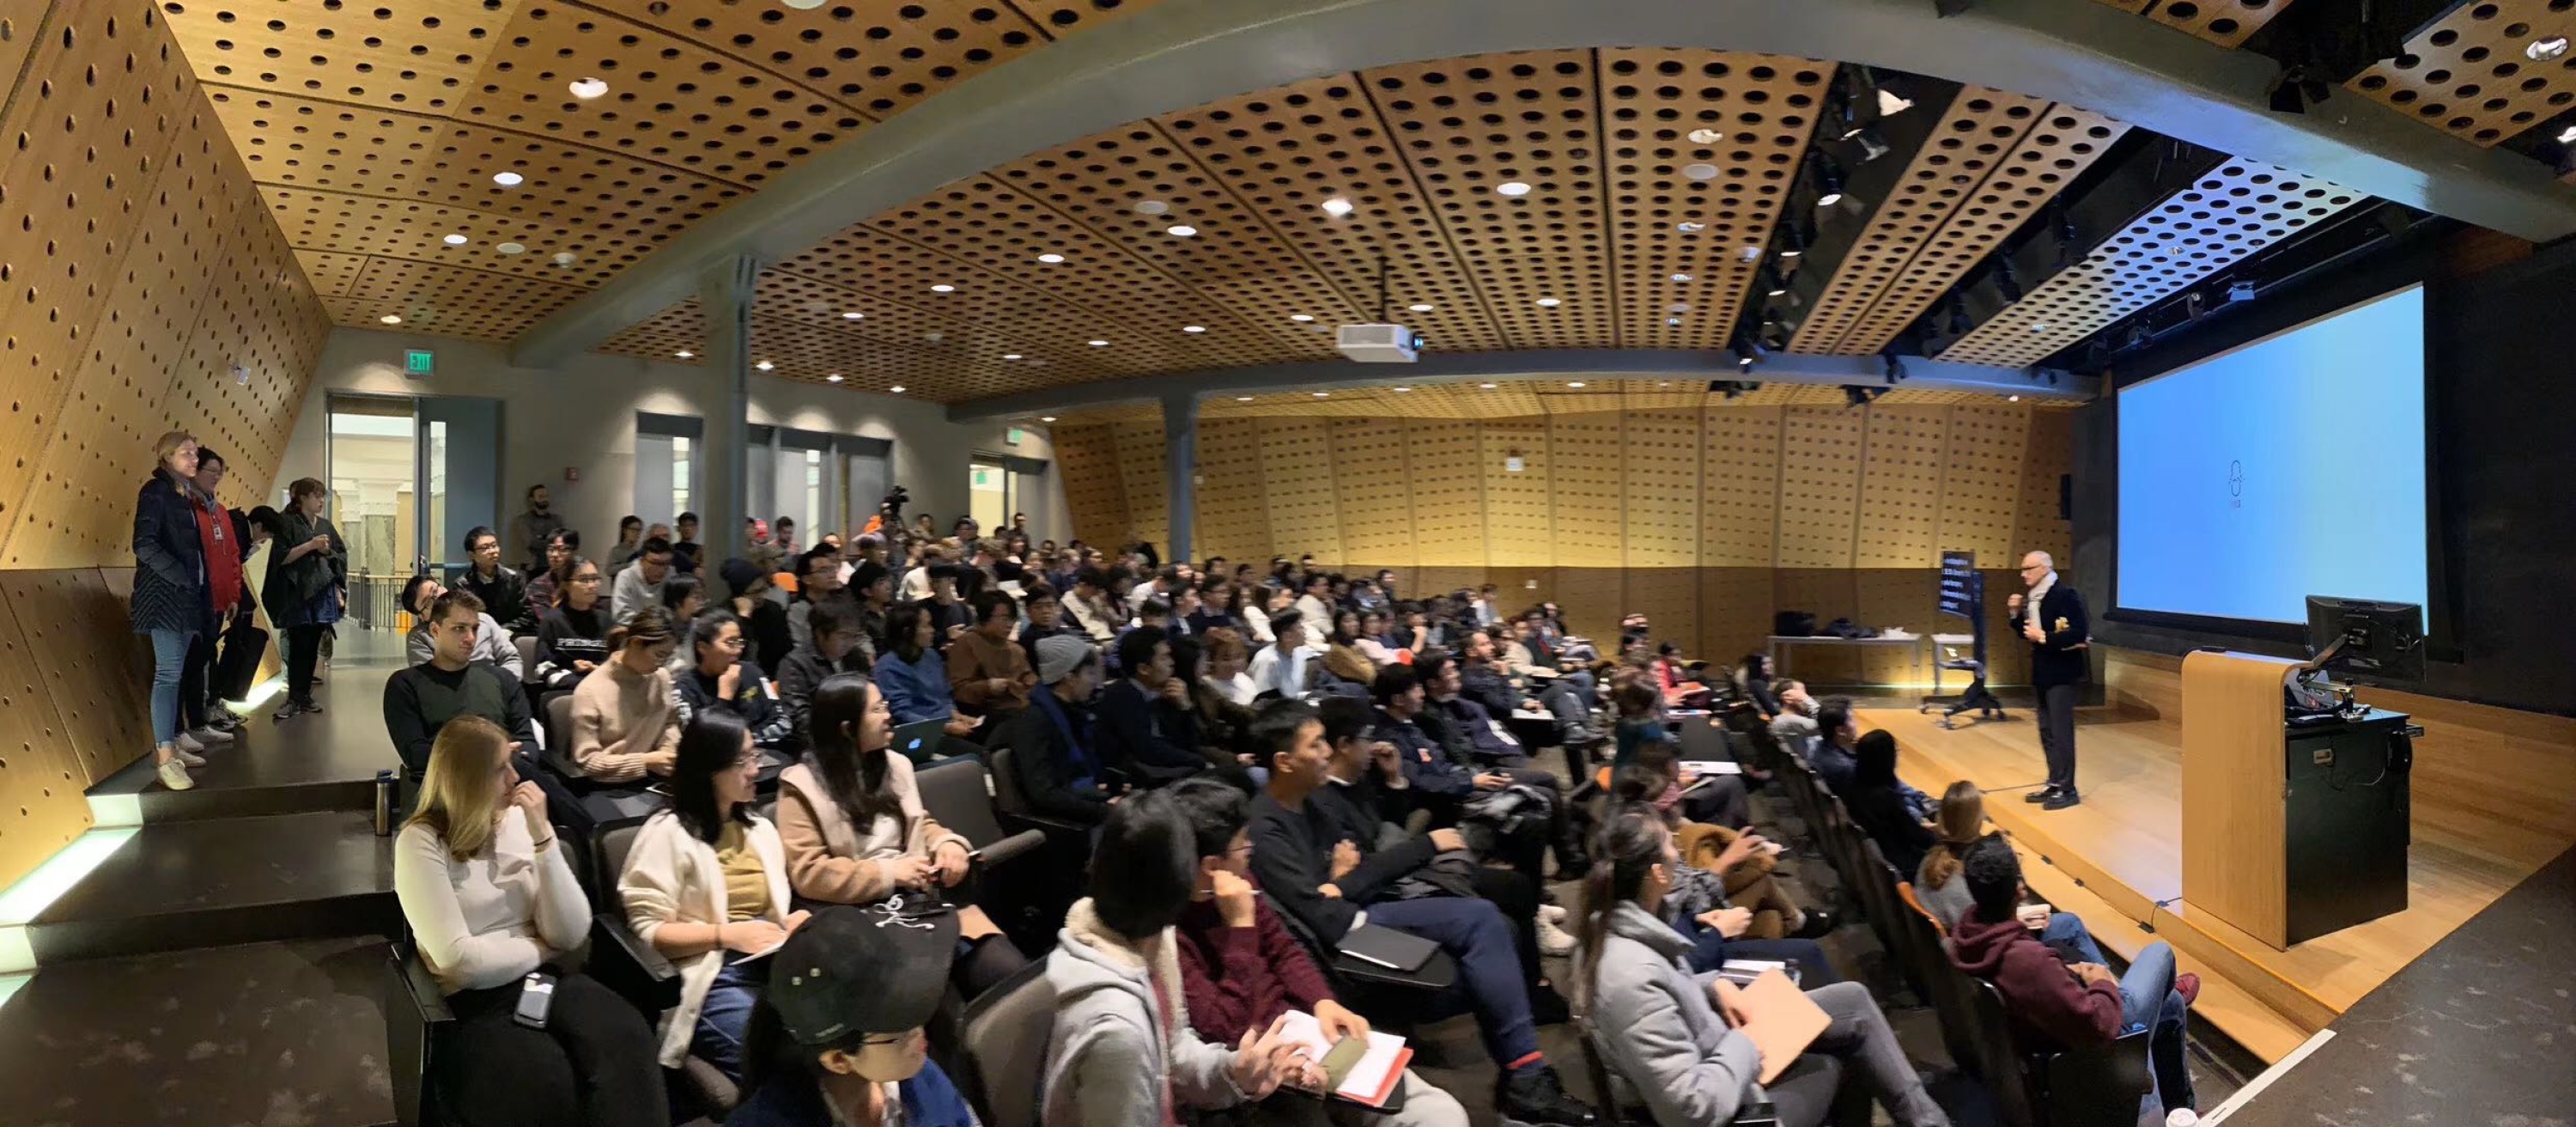 王子耕受邀成为雪城大学建筑学院2019秋季系列讲席讲座学者并发表主题演讲